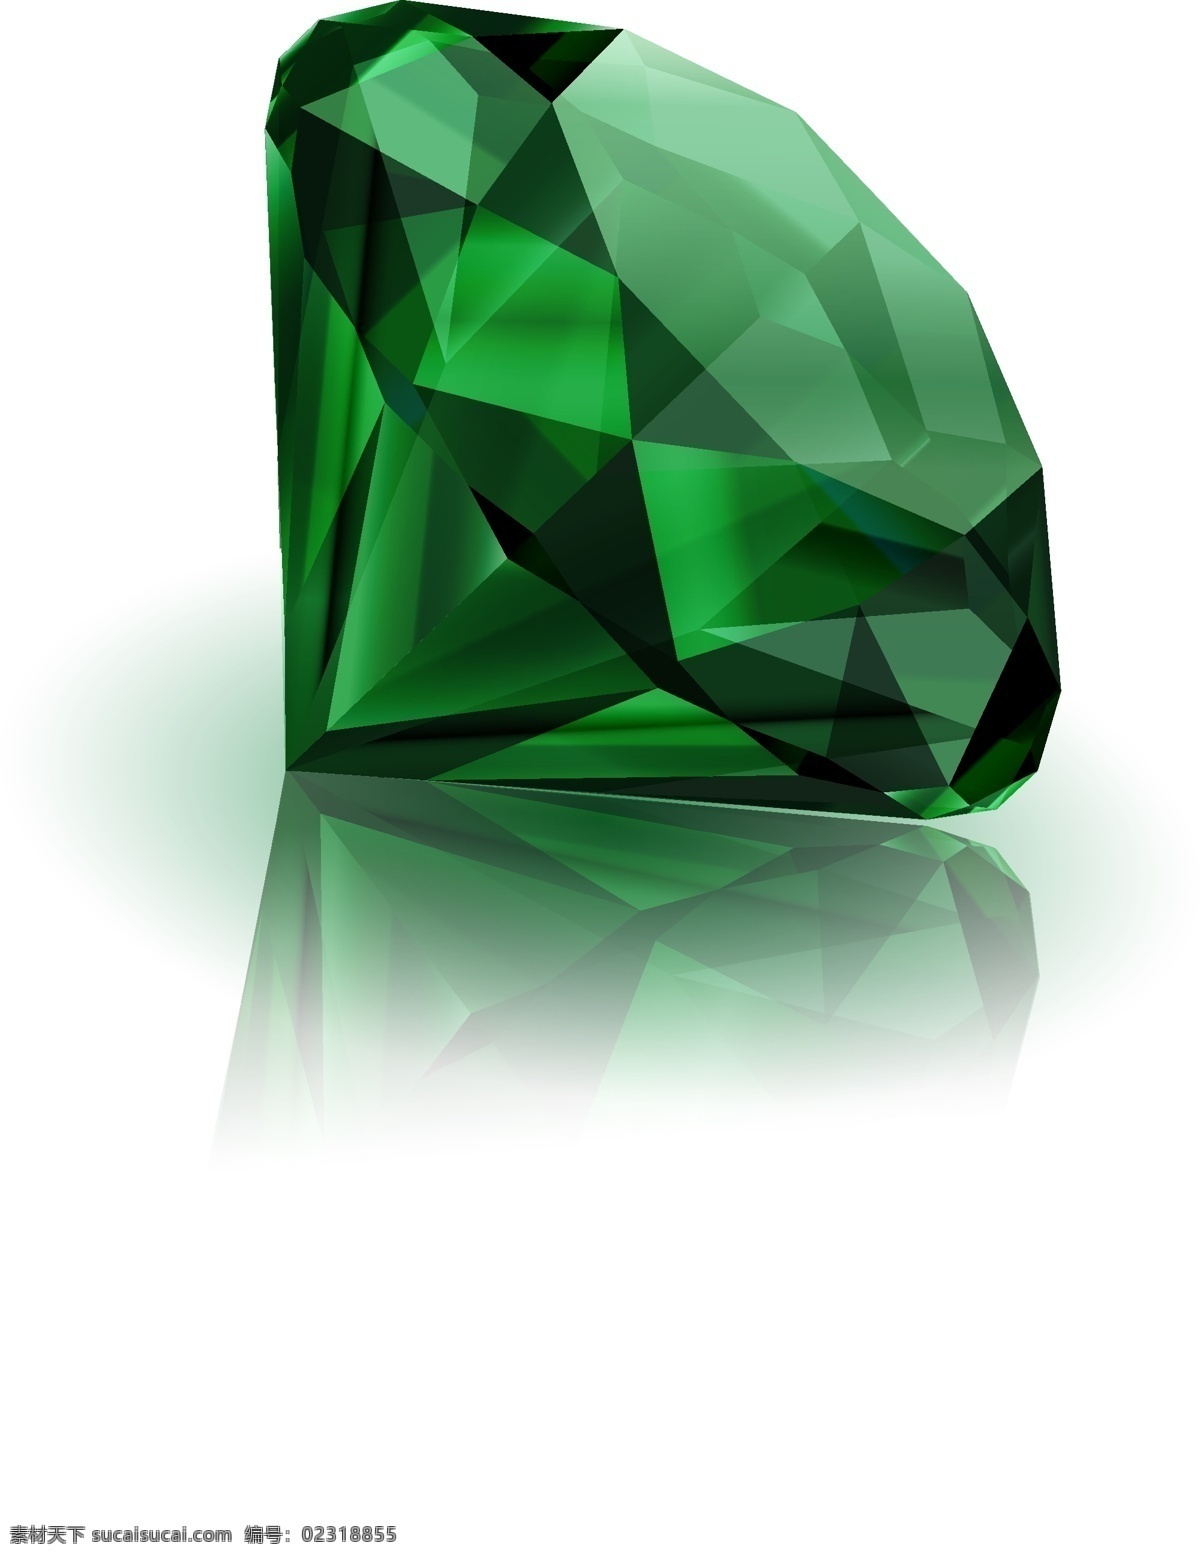 钻石 首饰 精美钻石 珠宝 绿宝石 手绘钻石 钻石广告 矢量素材 生活用品 生活百科